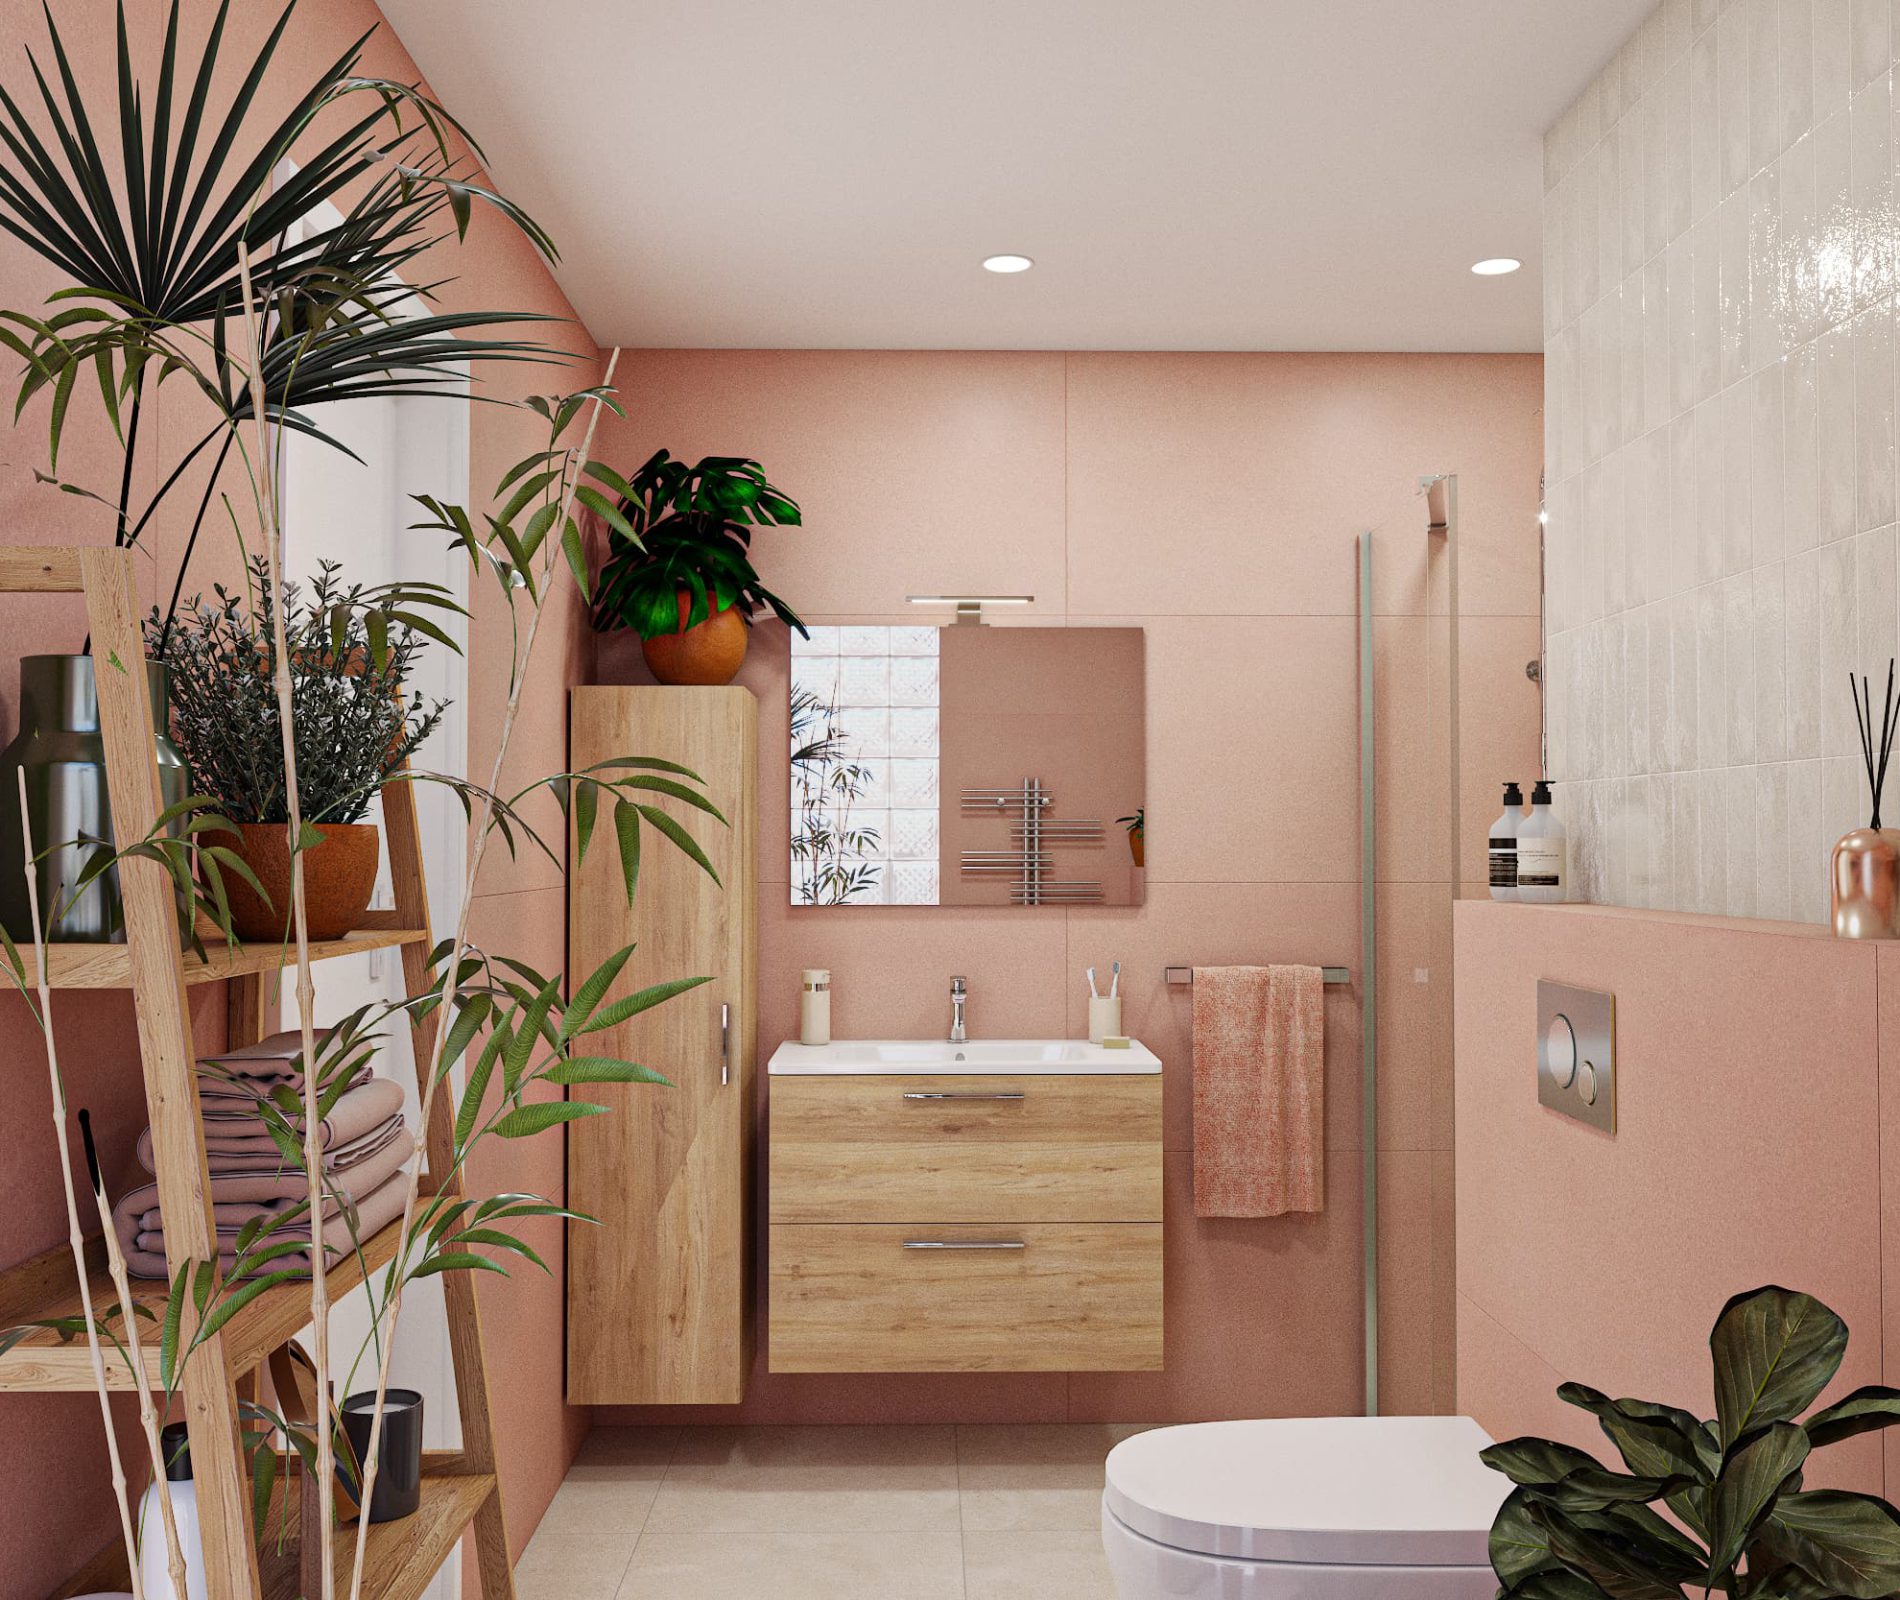 SIKO moderní koupelna pro singles, růžový obklad, květiny v koupelně, koupelnový nábytek v dřevodekoru, regál v koupelně